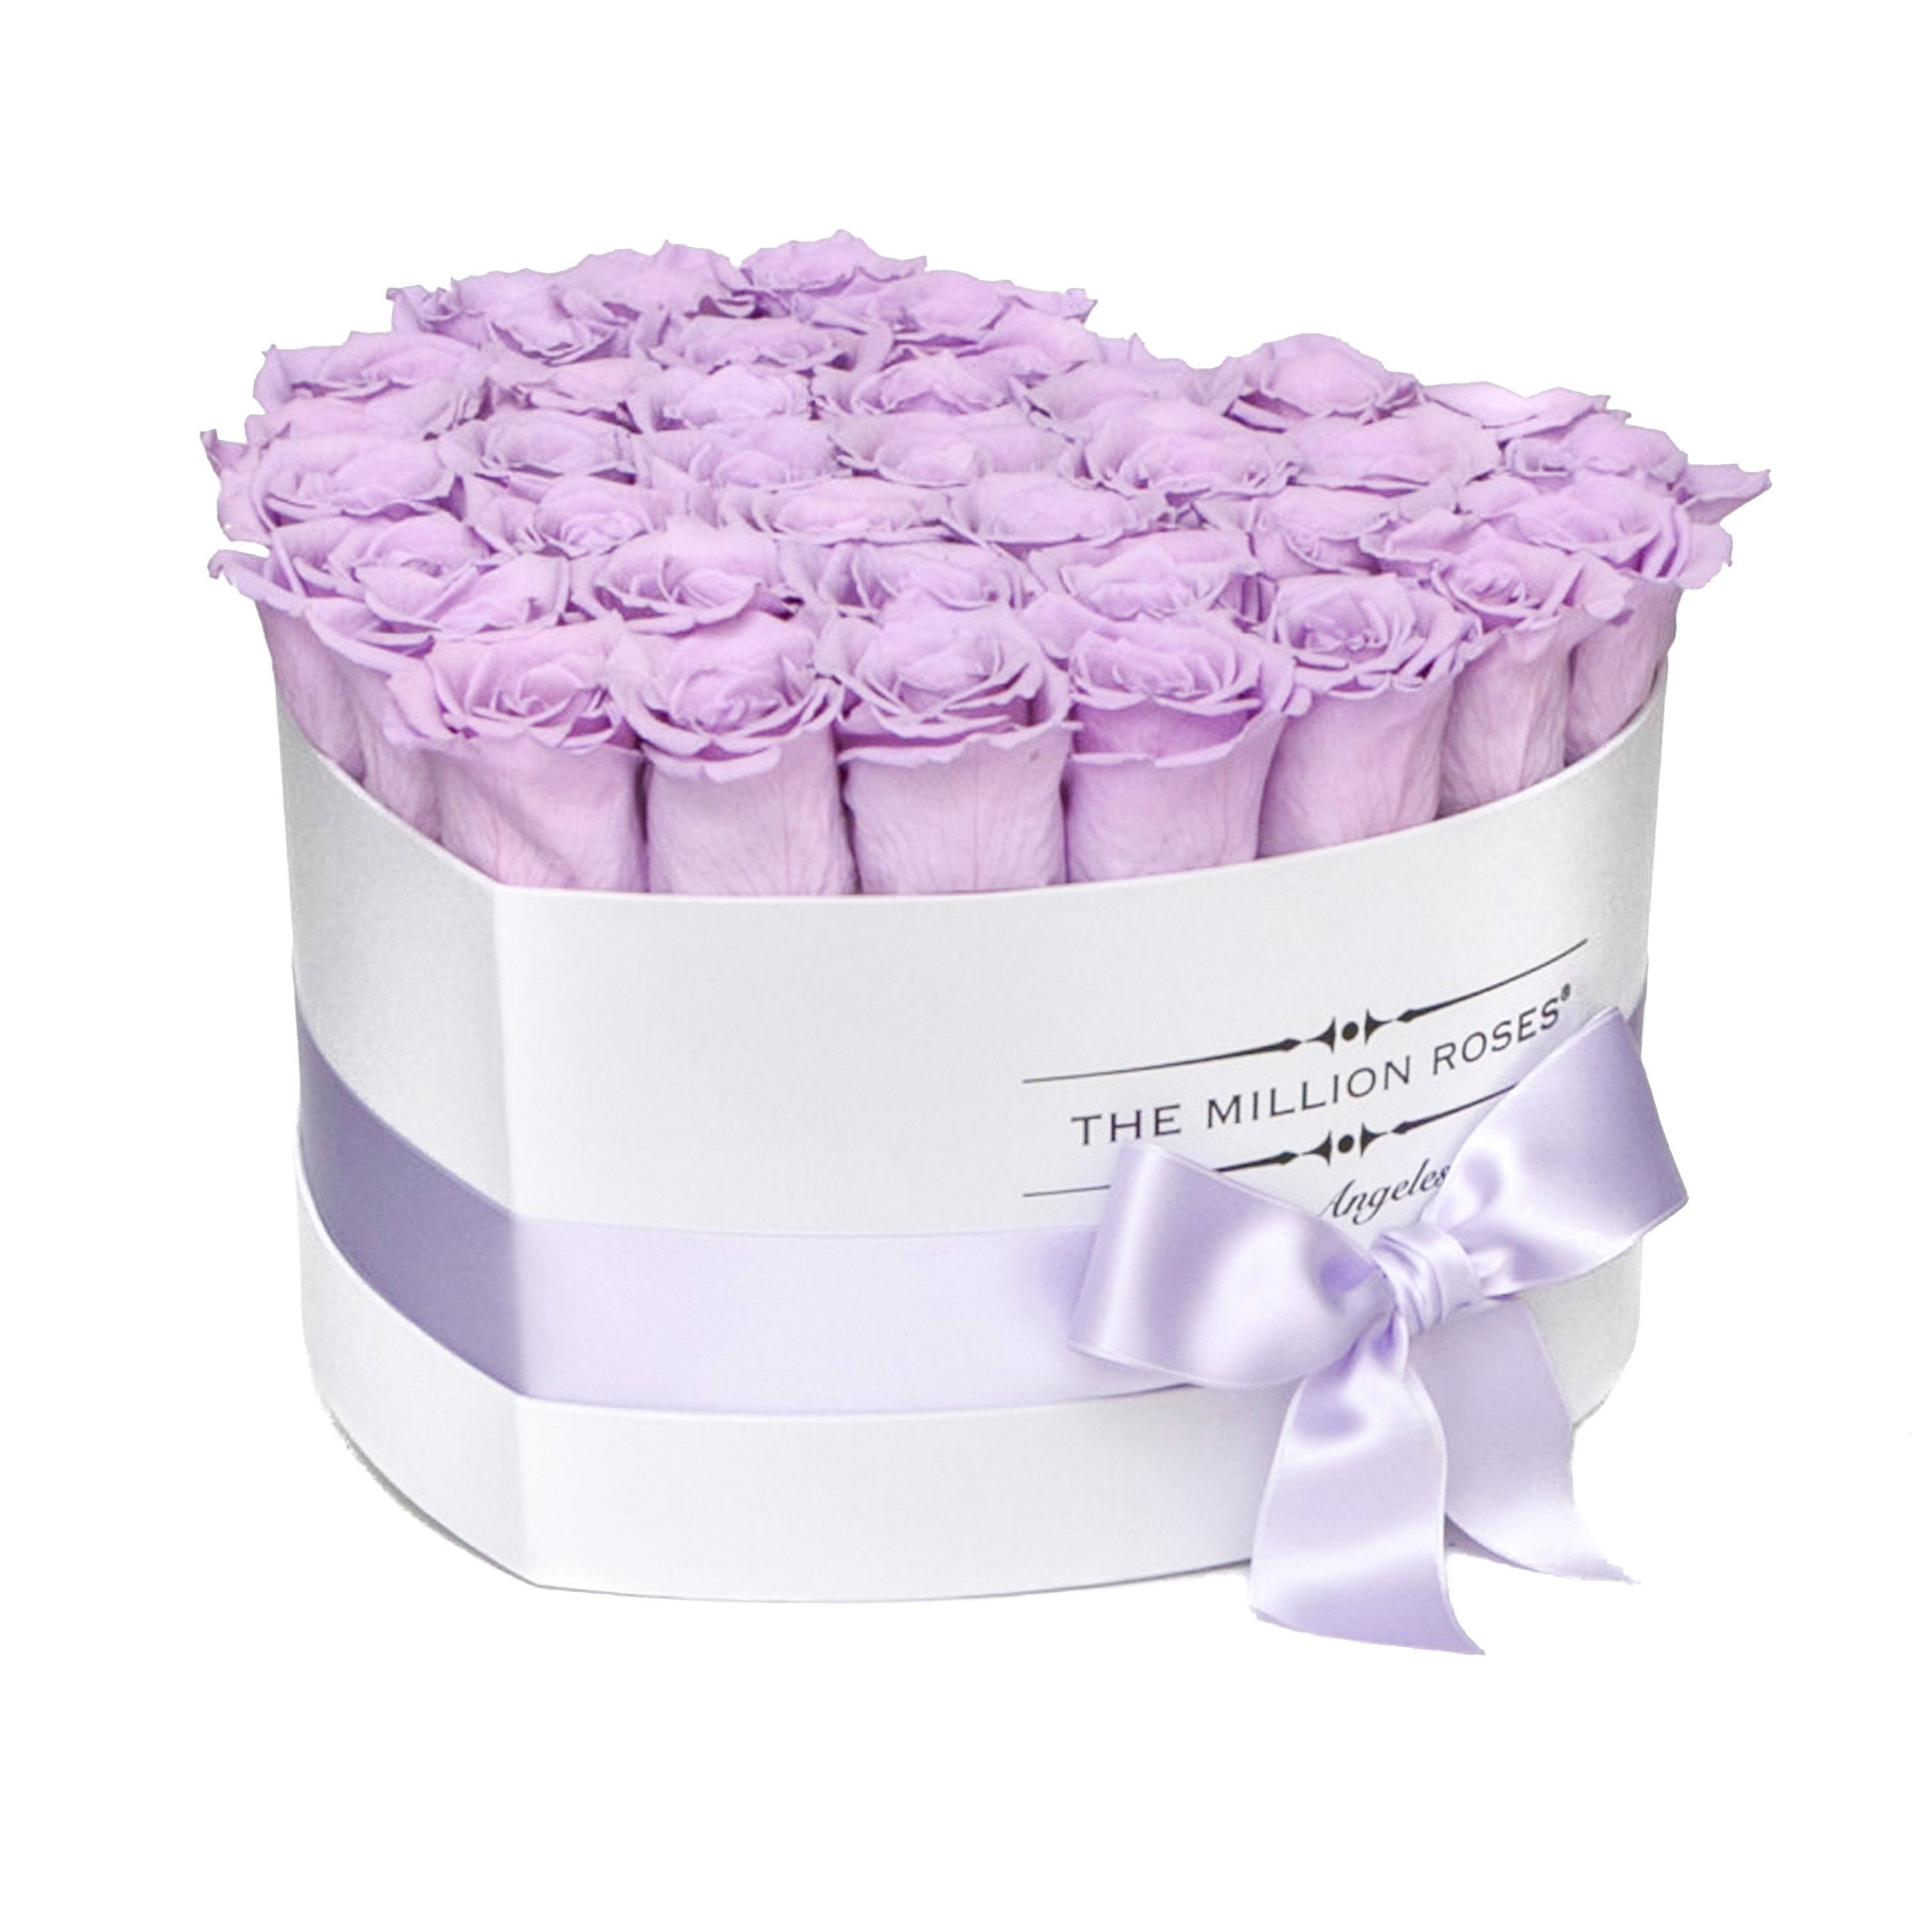 LOVE box - white - lavender roses lavender eternity roses - the million roses